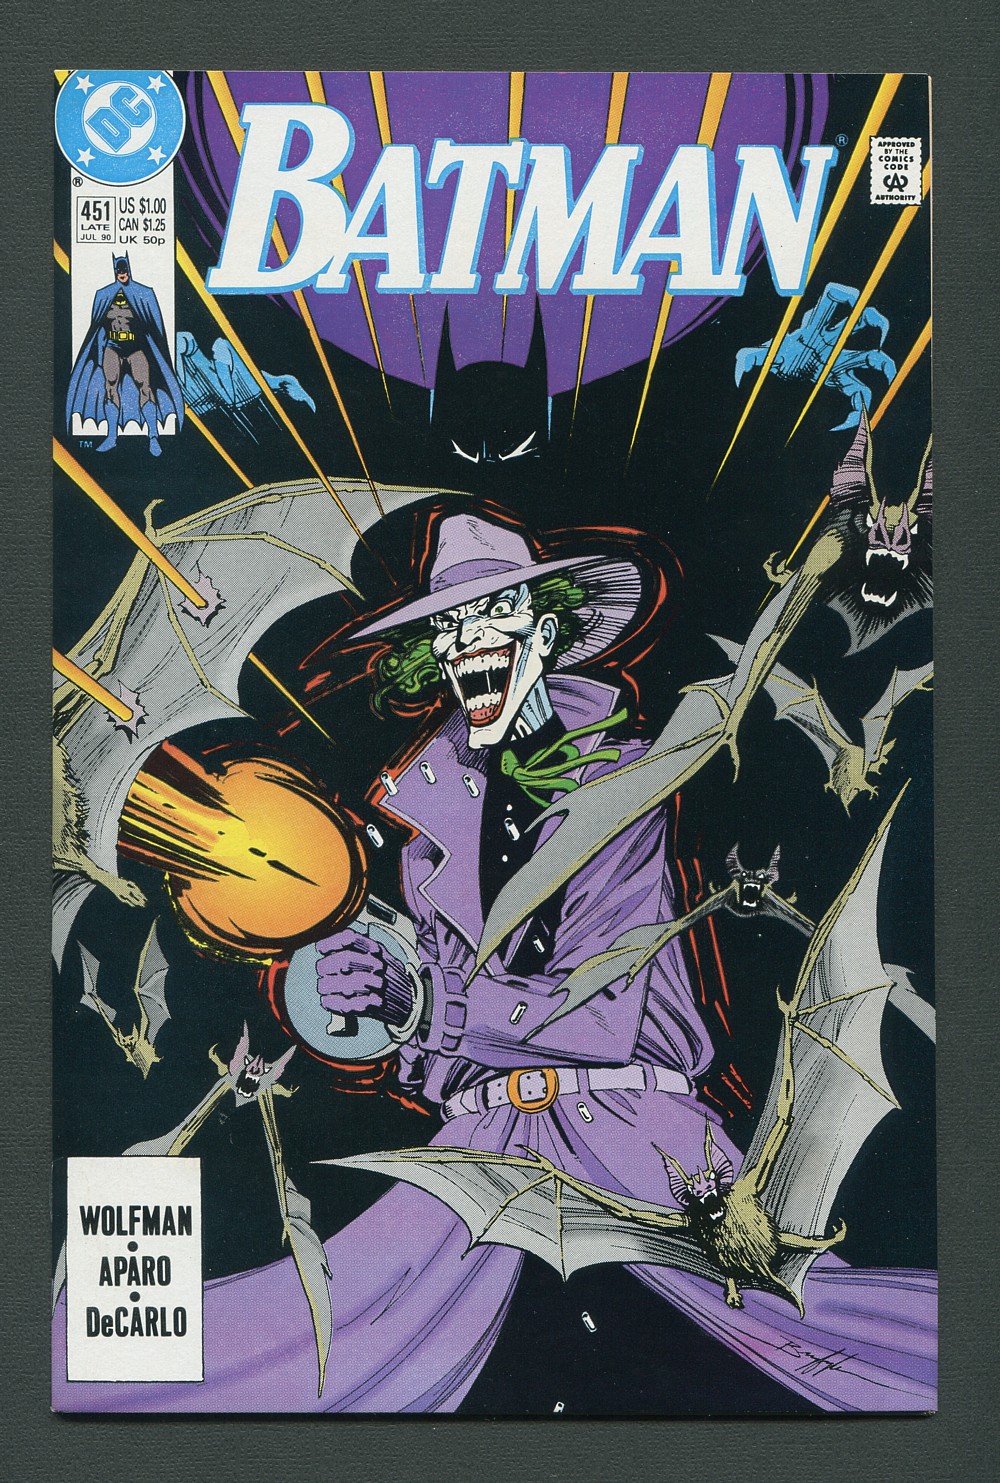 Details about   BATMAN #448 DC COMICS 1990 NM+ 